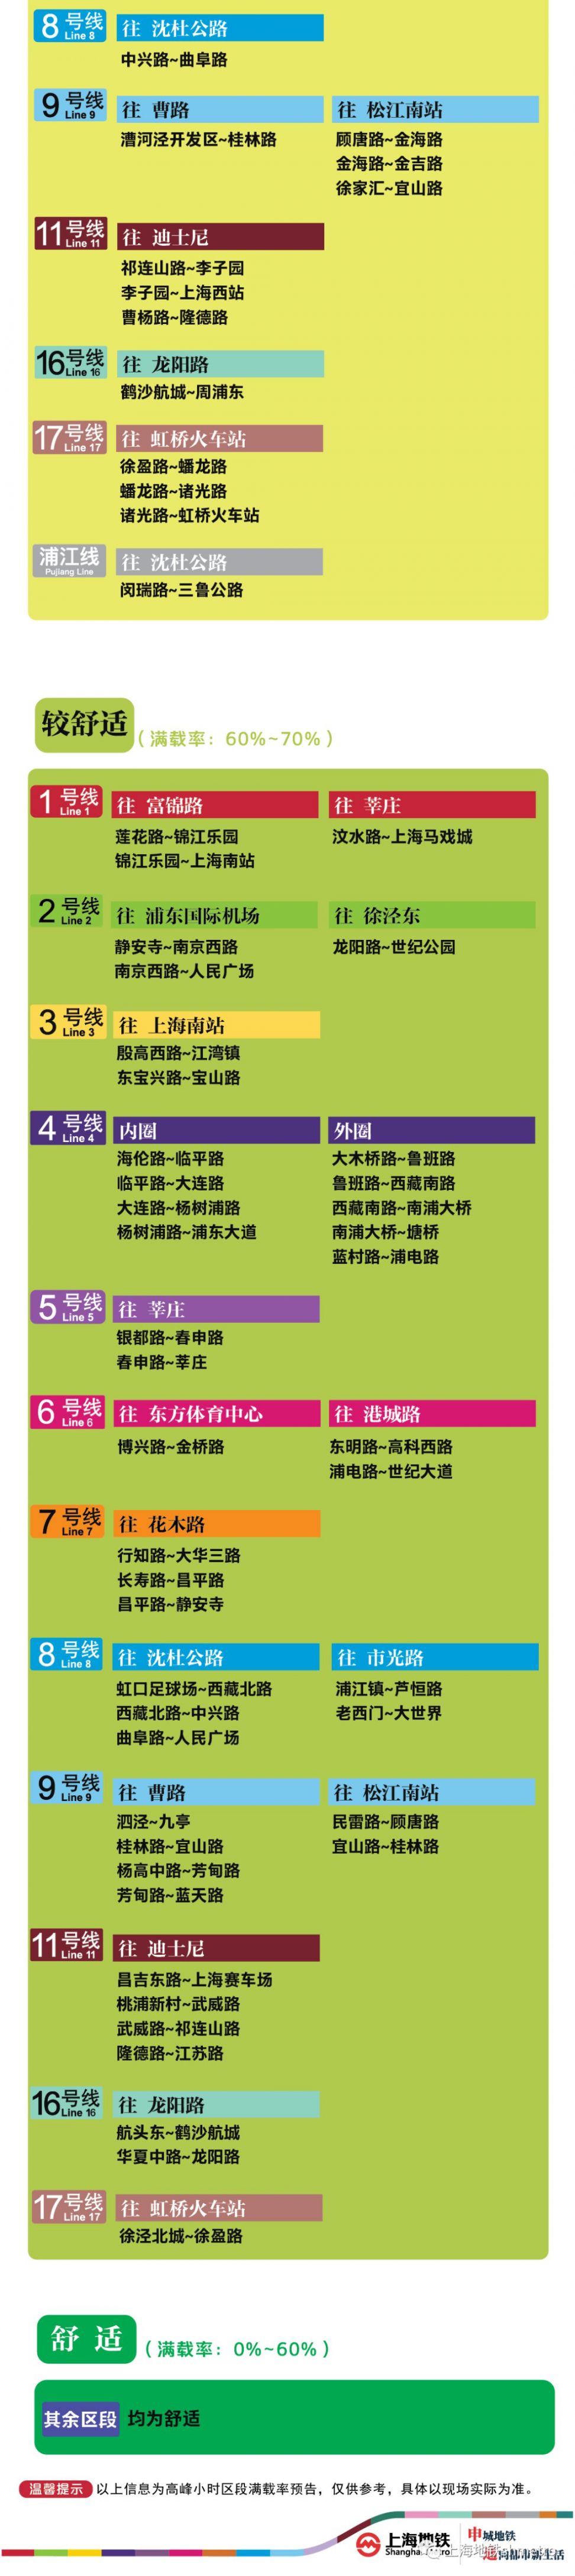 7月28日上海11座地铁站早高峰限流 (附舒适度预告)